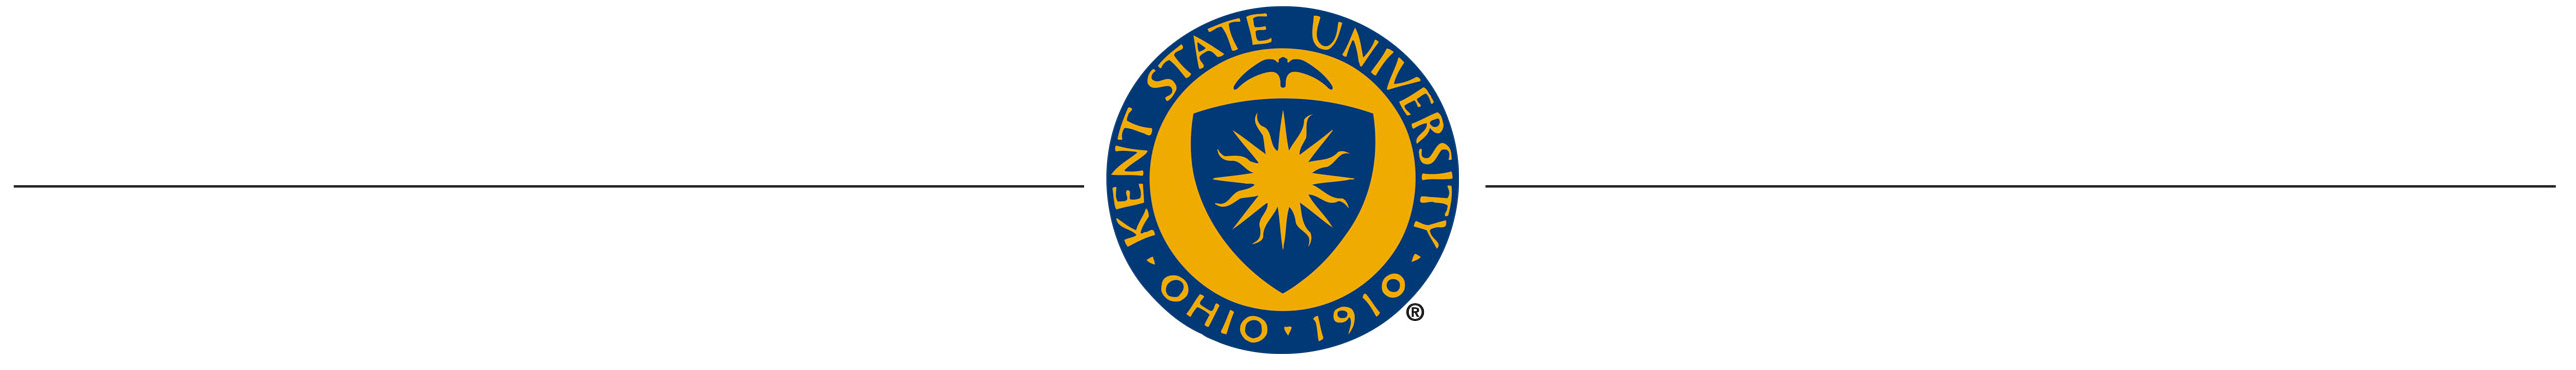 Kent State University Seal